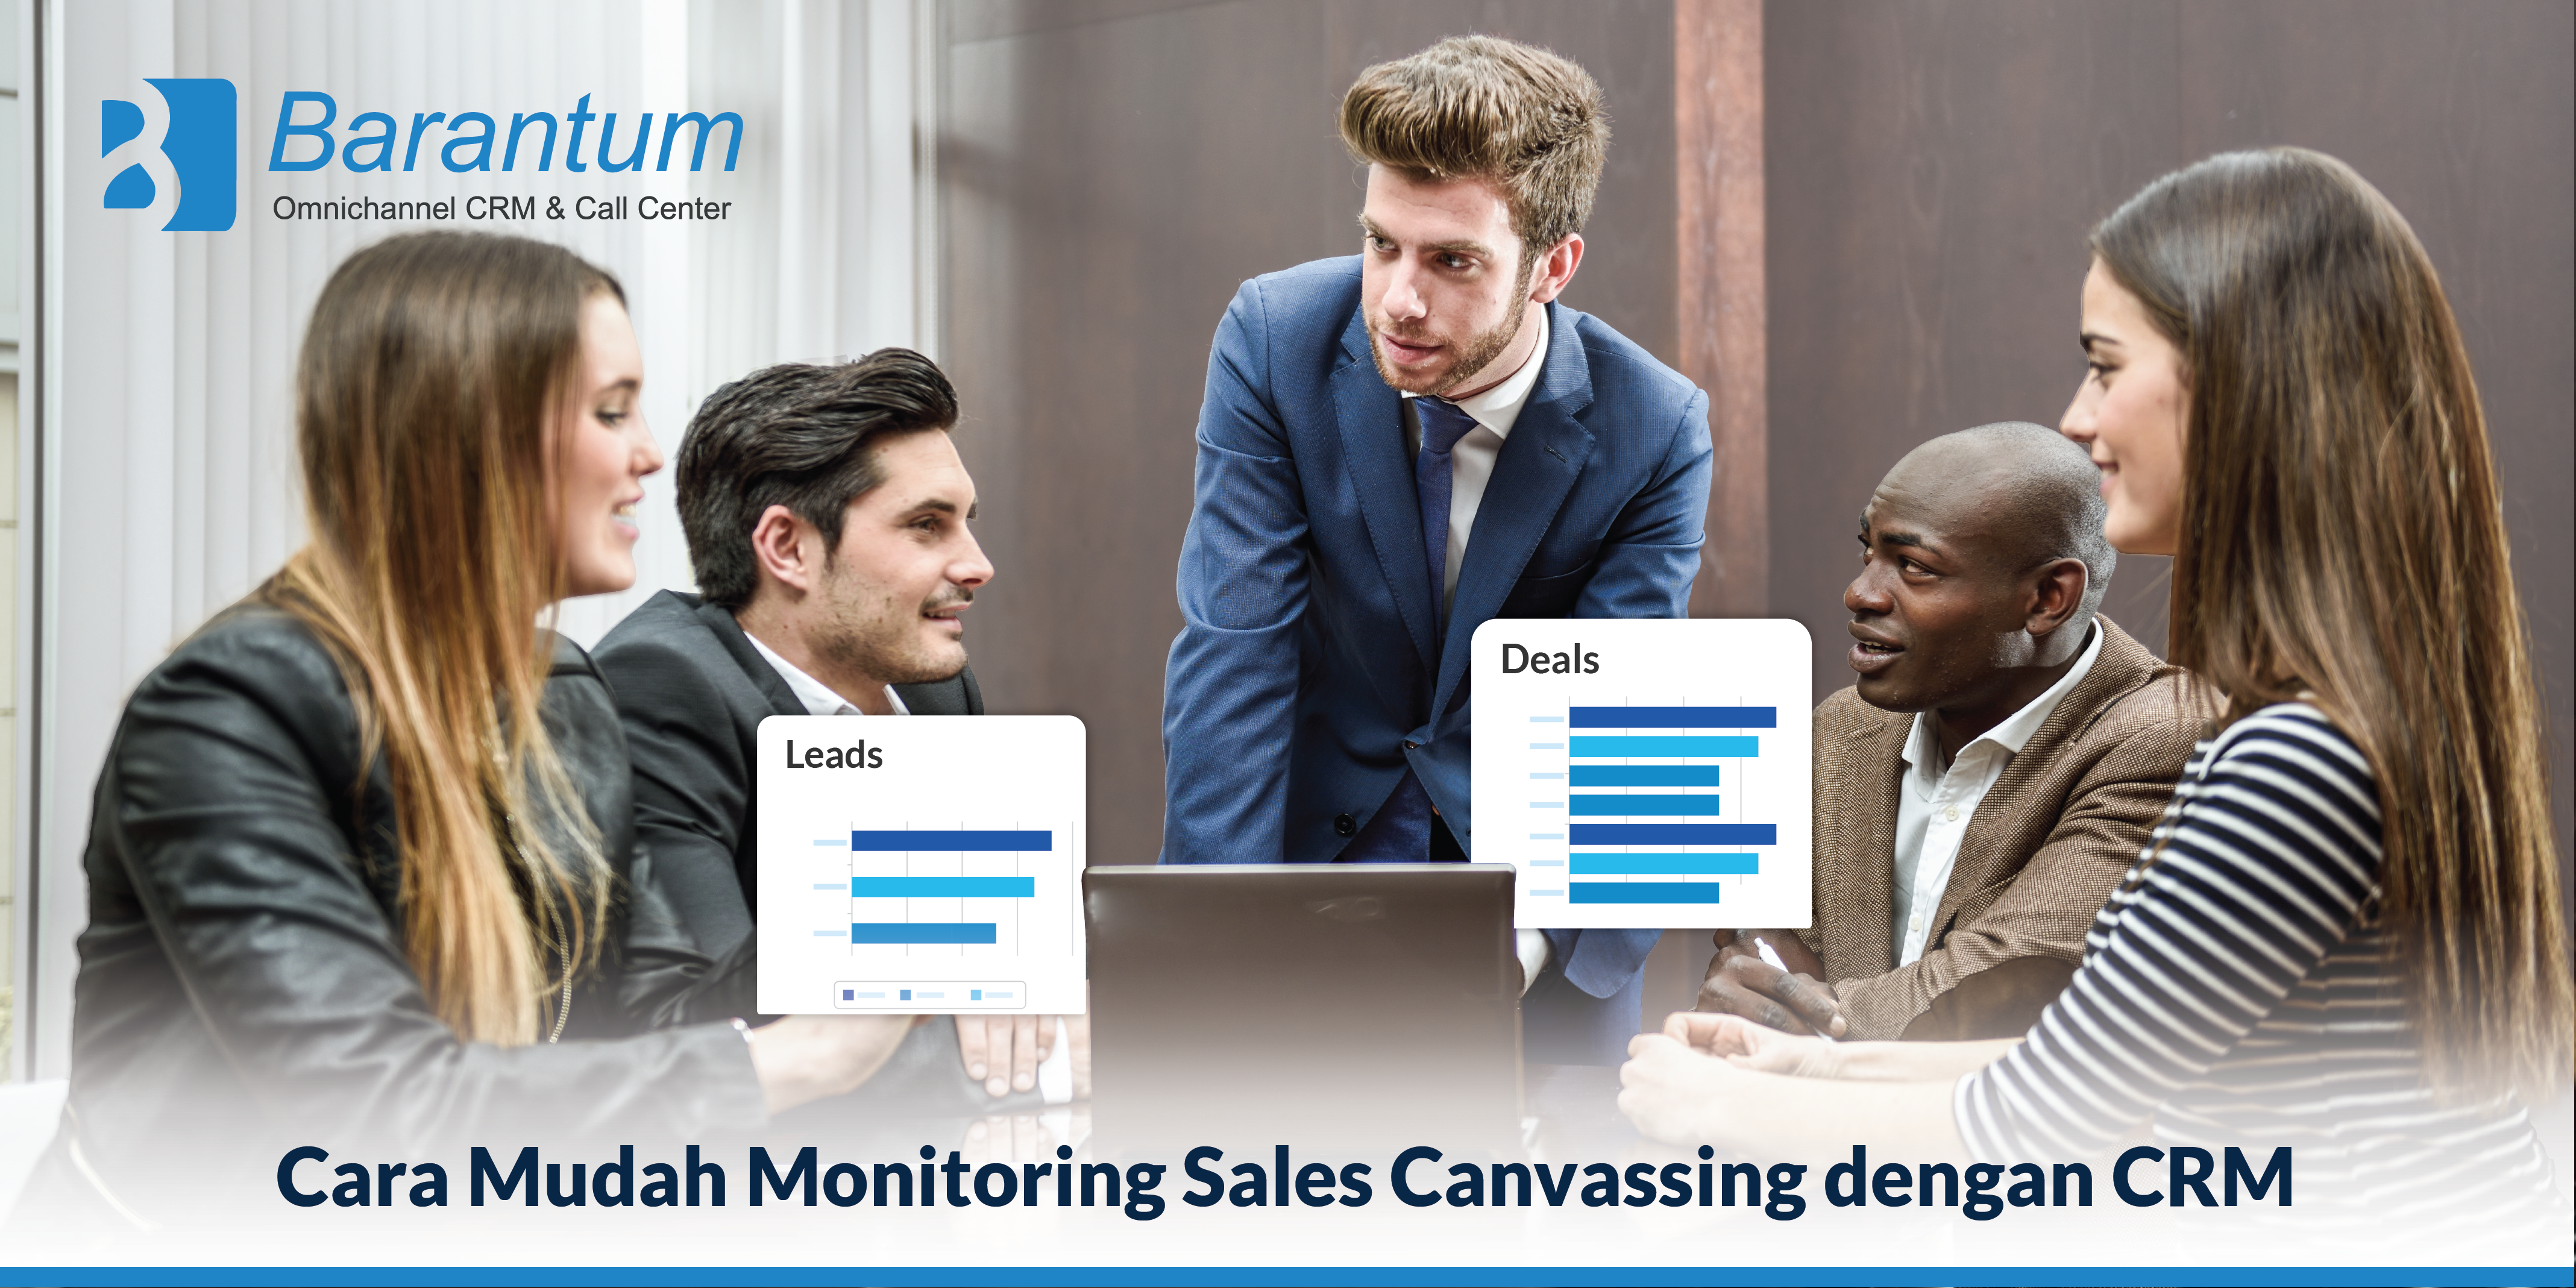 Cara-Mudah-Monitoring-Sales-Canvassing-dengan-CRM-03